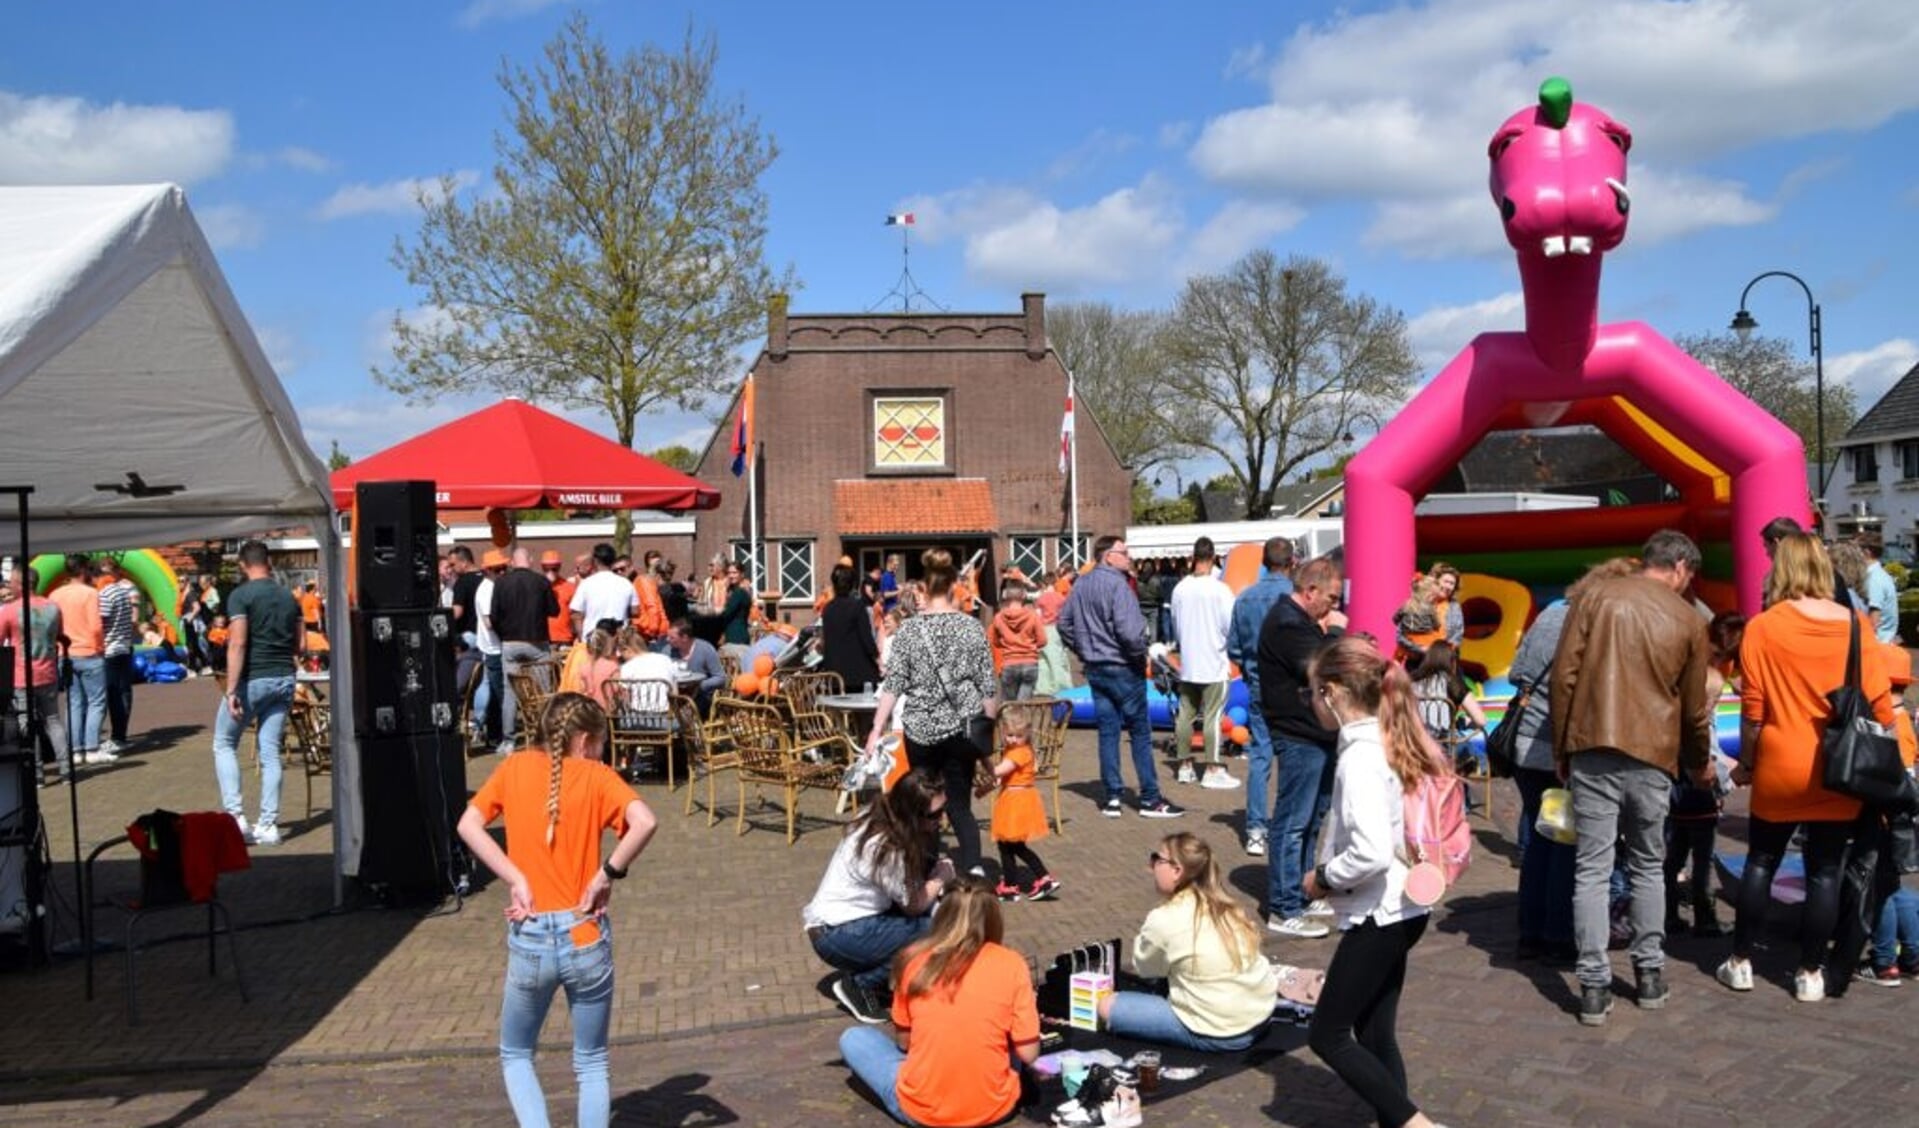 Koningsdag in Doornenburg met veel spellen en vertier. (foto: DeDoornenburger.nl)